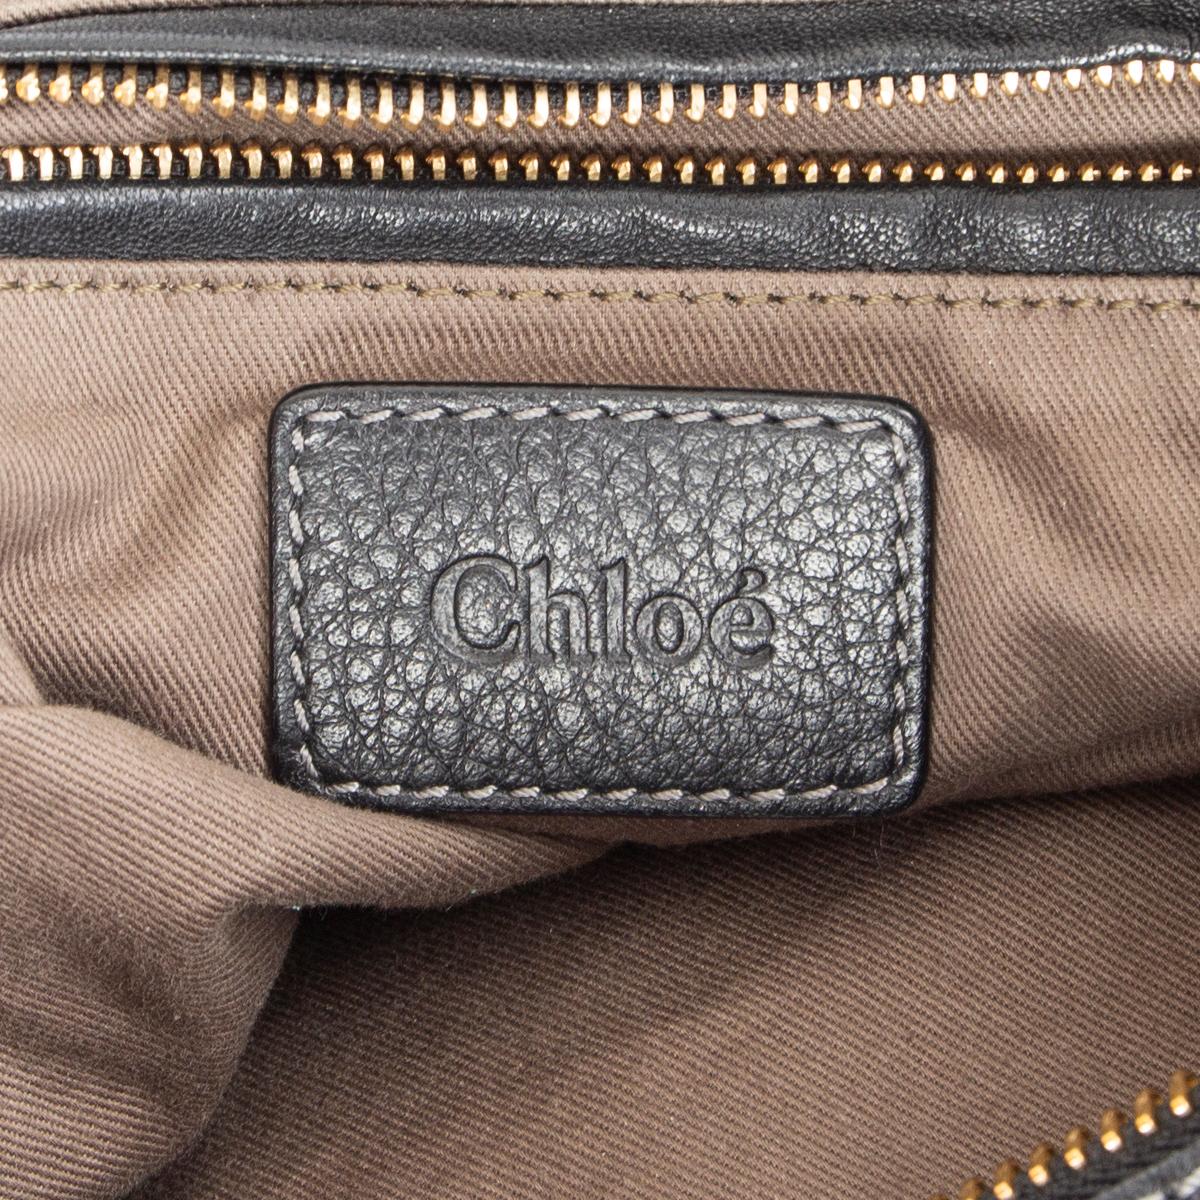 Women's CHLOE black leather MARCIE LARGE HOBO Shoulder Bag